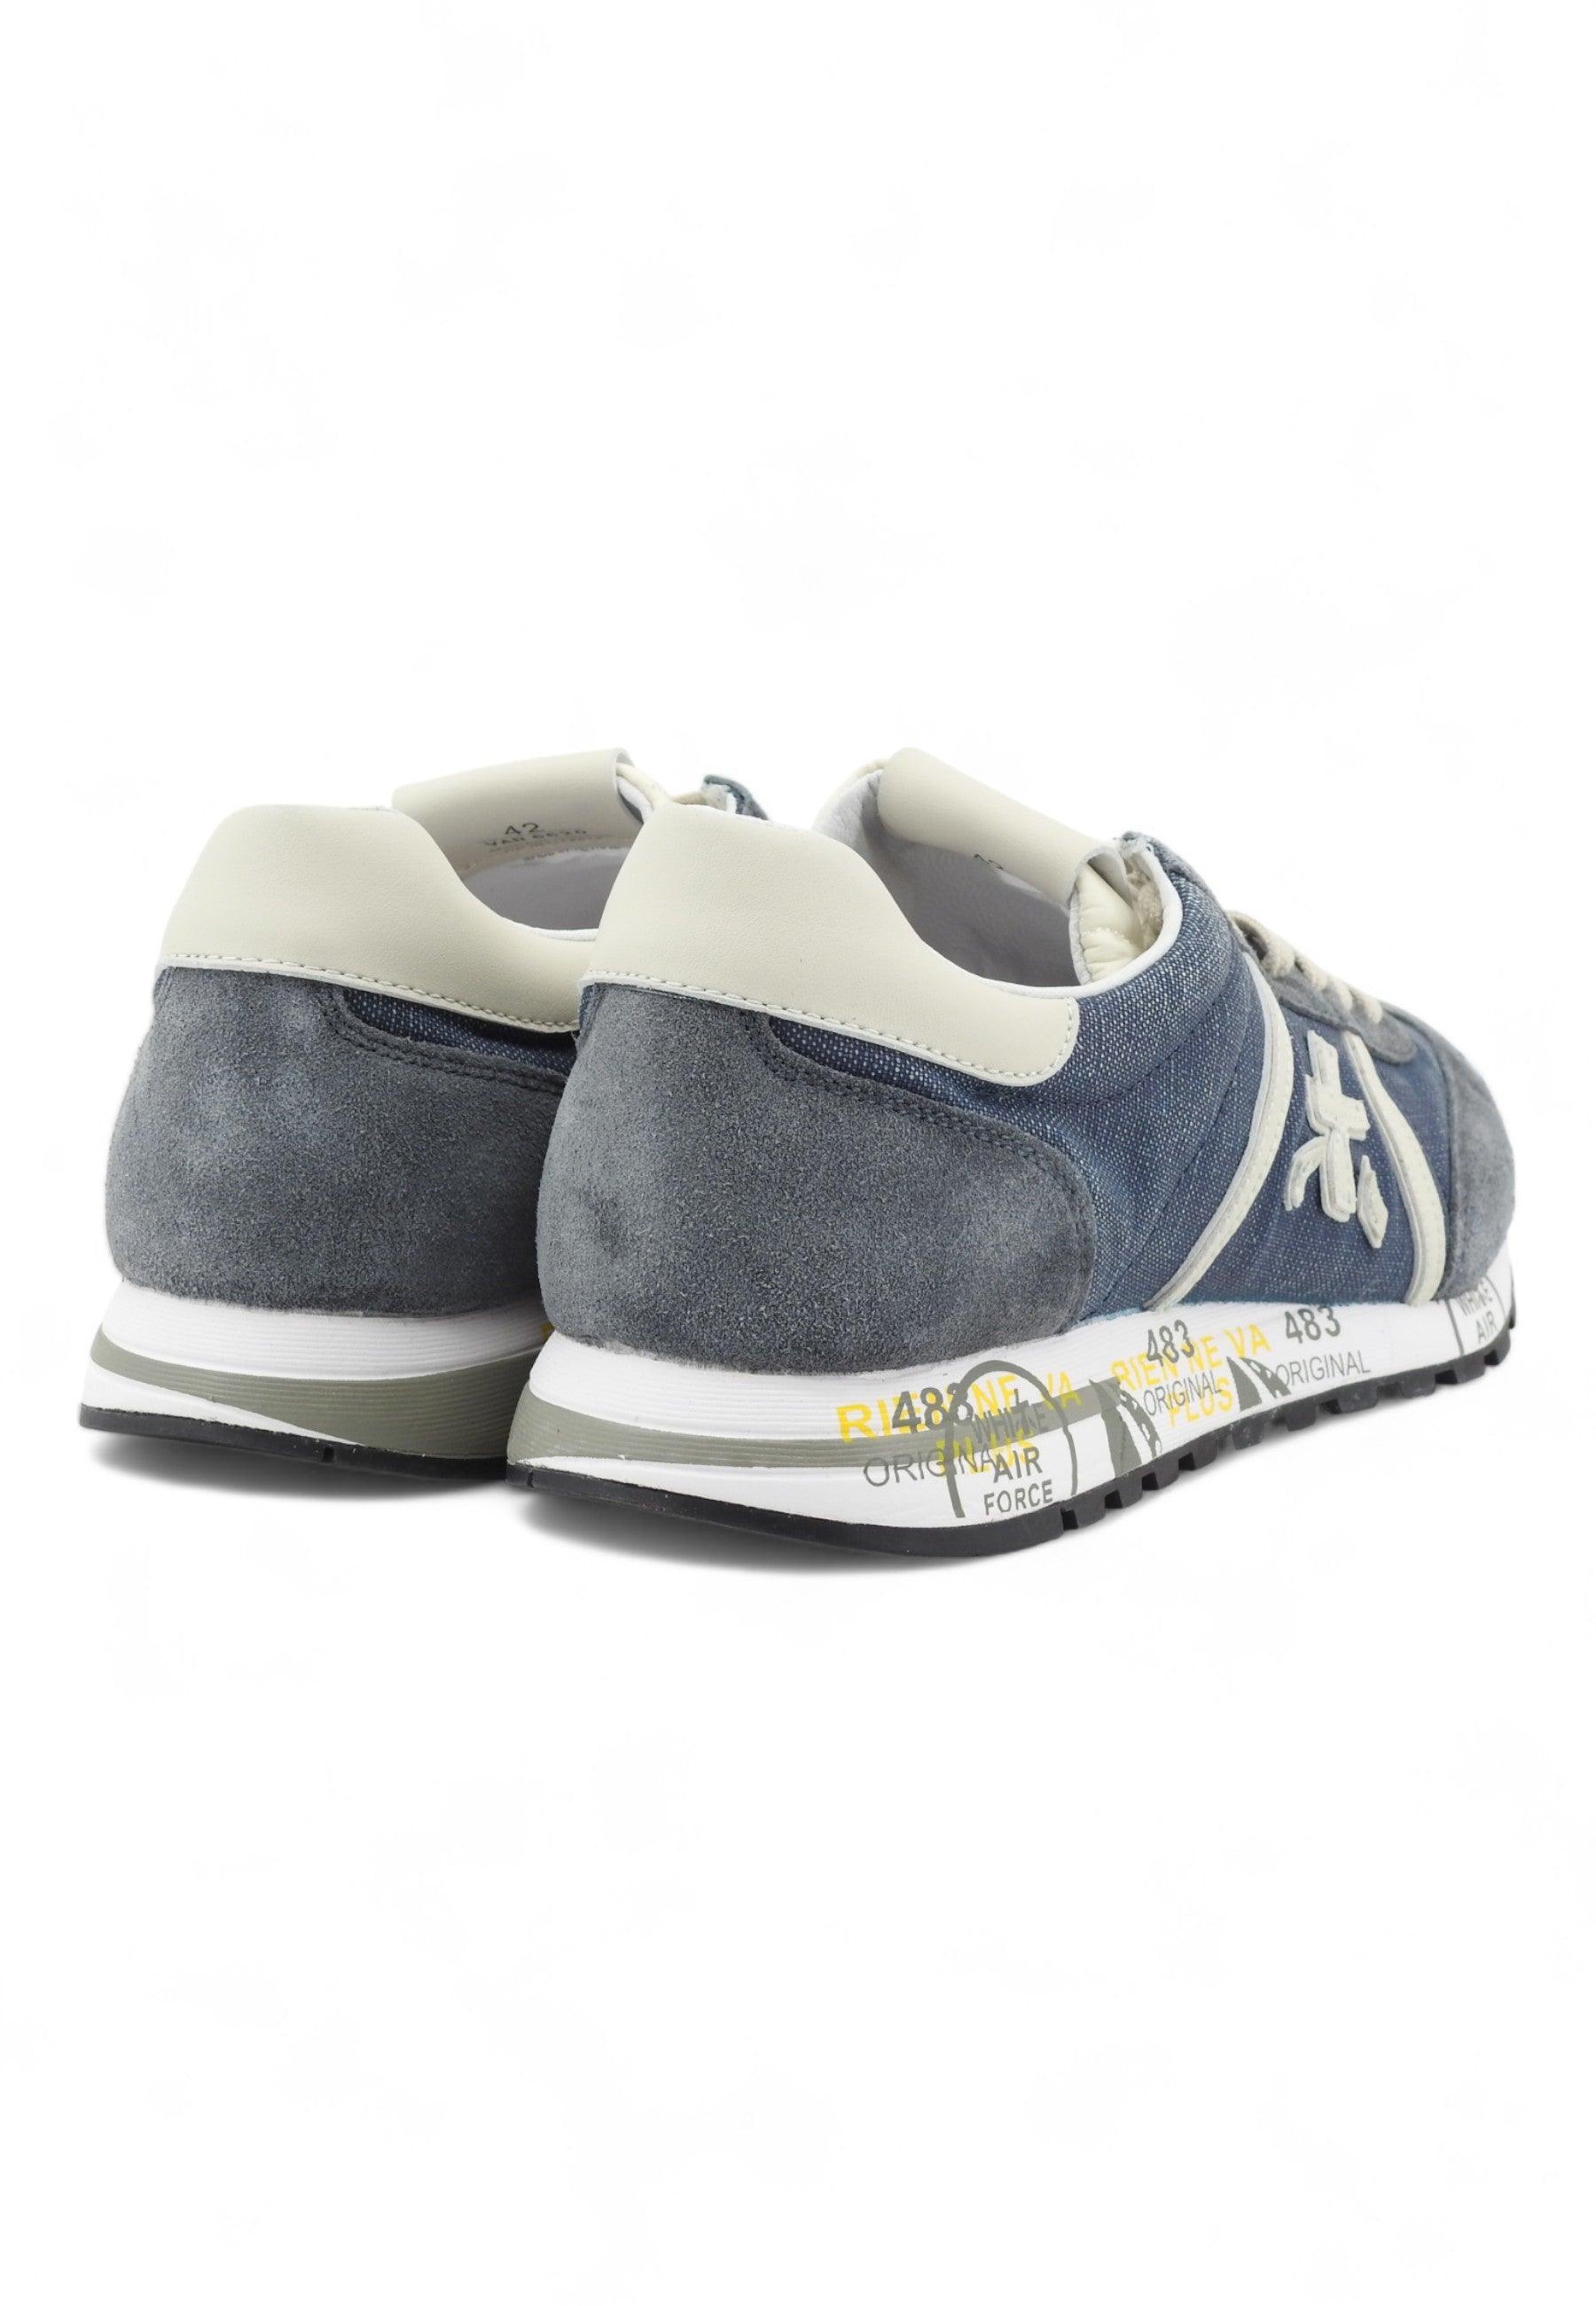 PREMIATA Sneaker Uomo Blu Denim Cream LUCY-6620 - Sandrini Calzature e Abbigliamento